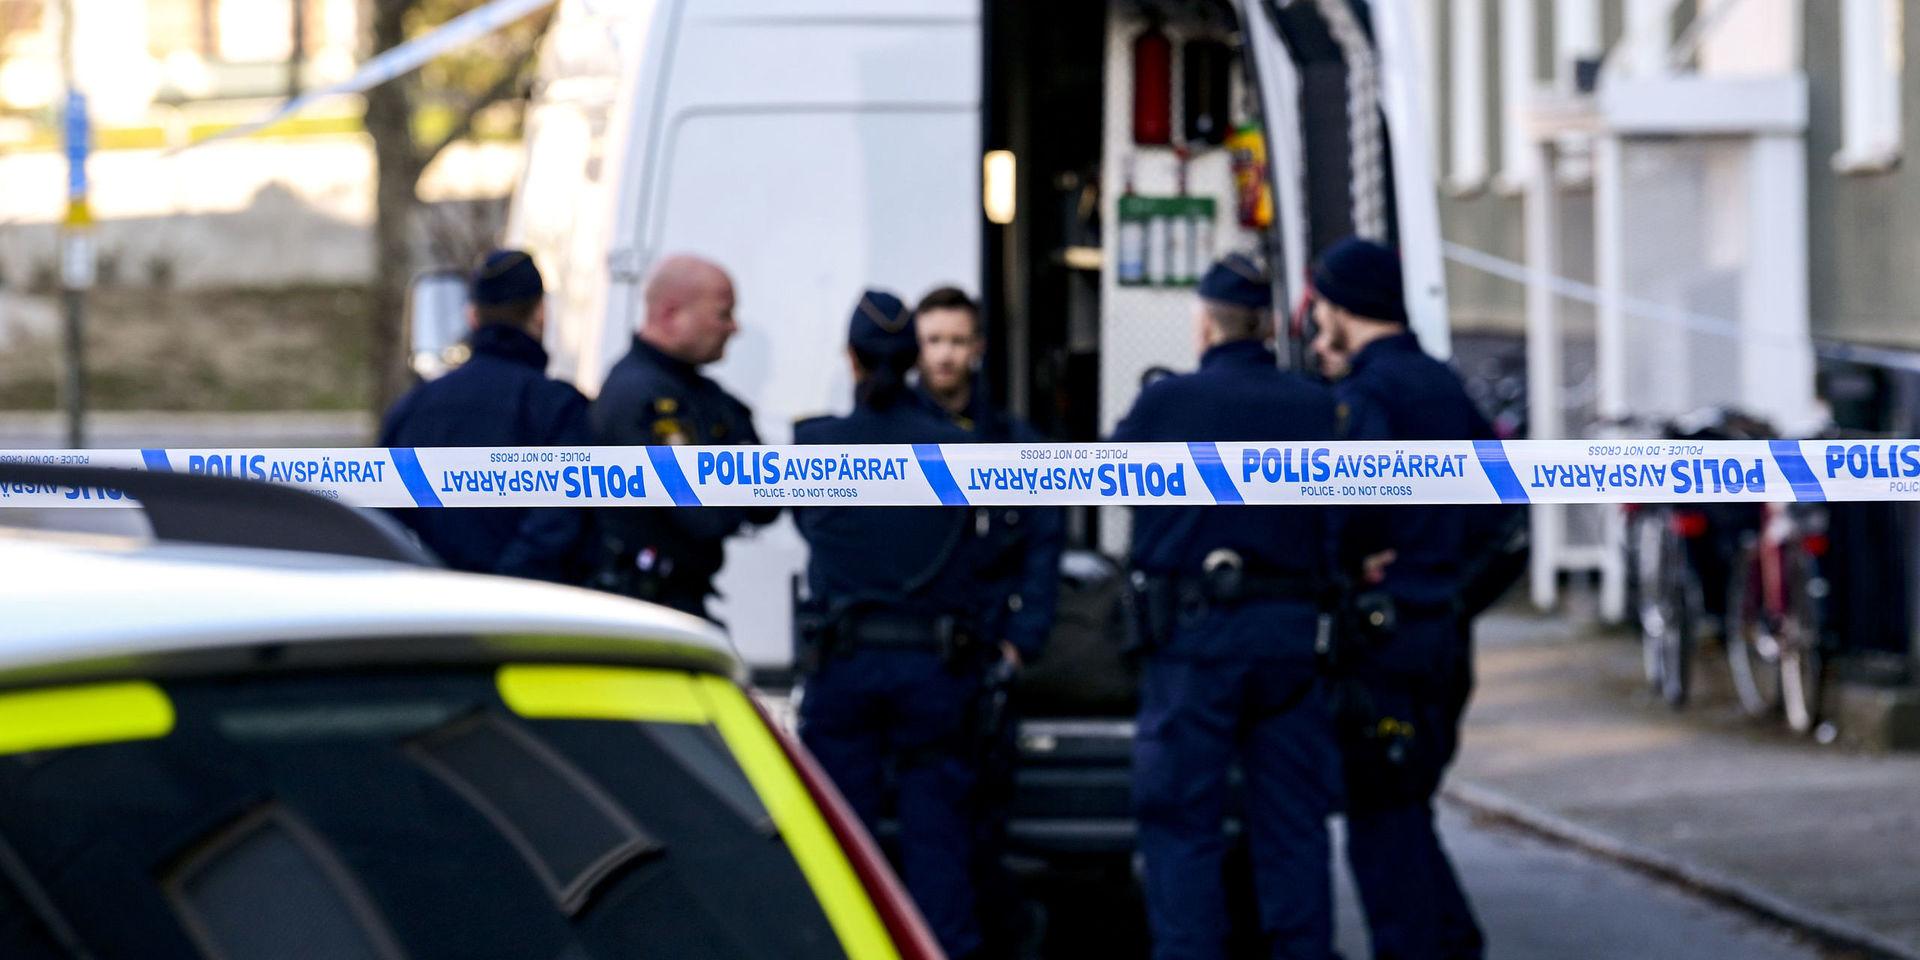 Polis och bombtekniker bakom avspärrningarna på Vitemöllegatan i Malmö.